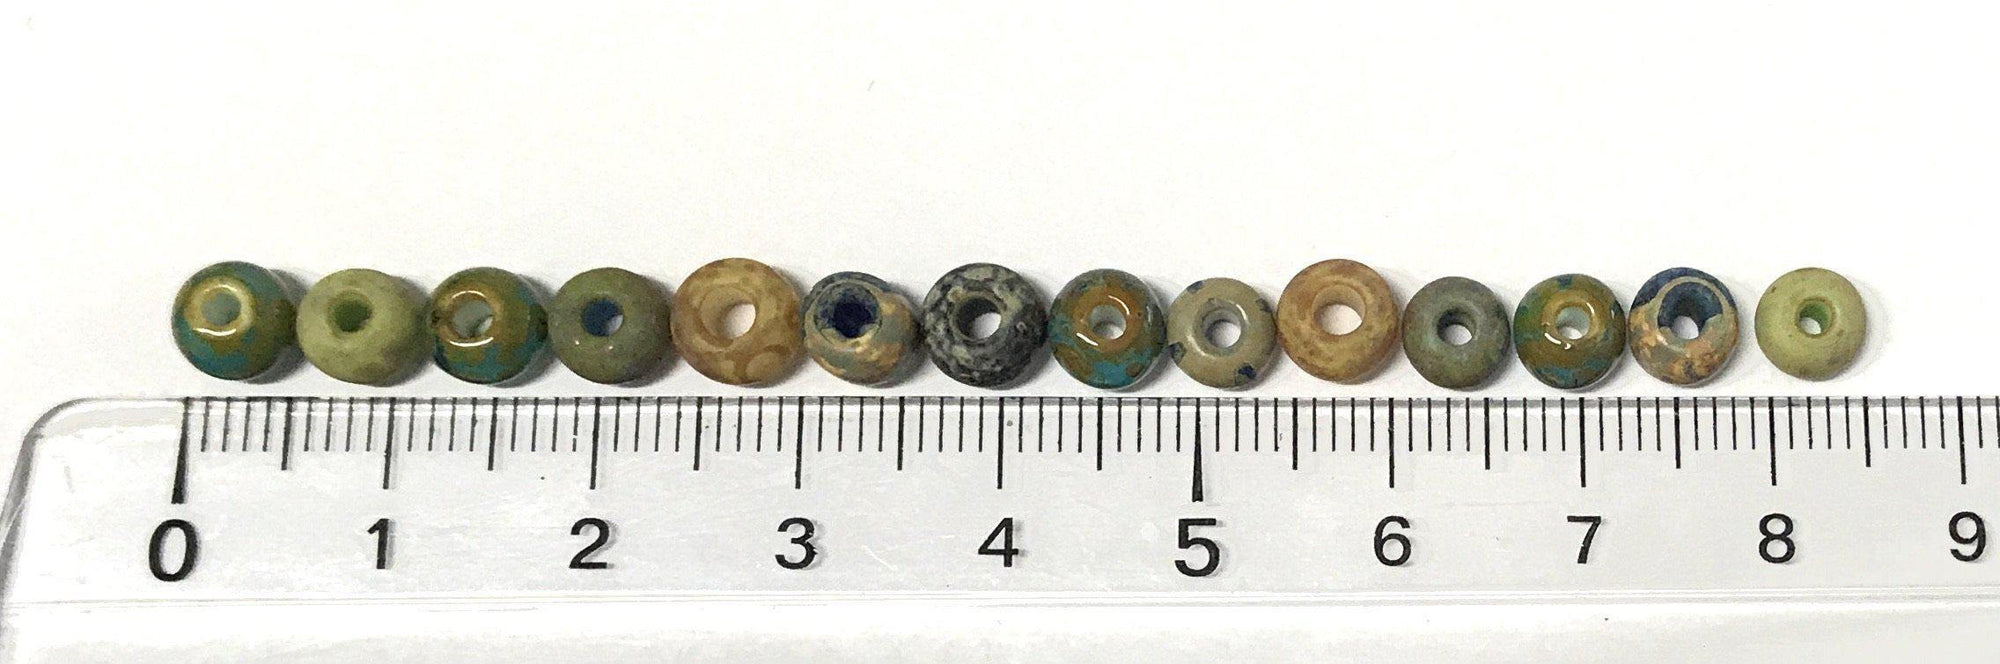 Perles en verre Picasso vieilli 6 mm - couleur Seagrass Mix